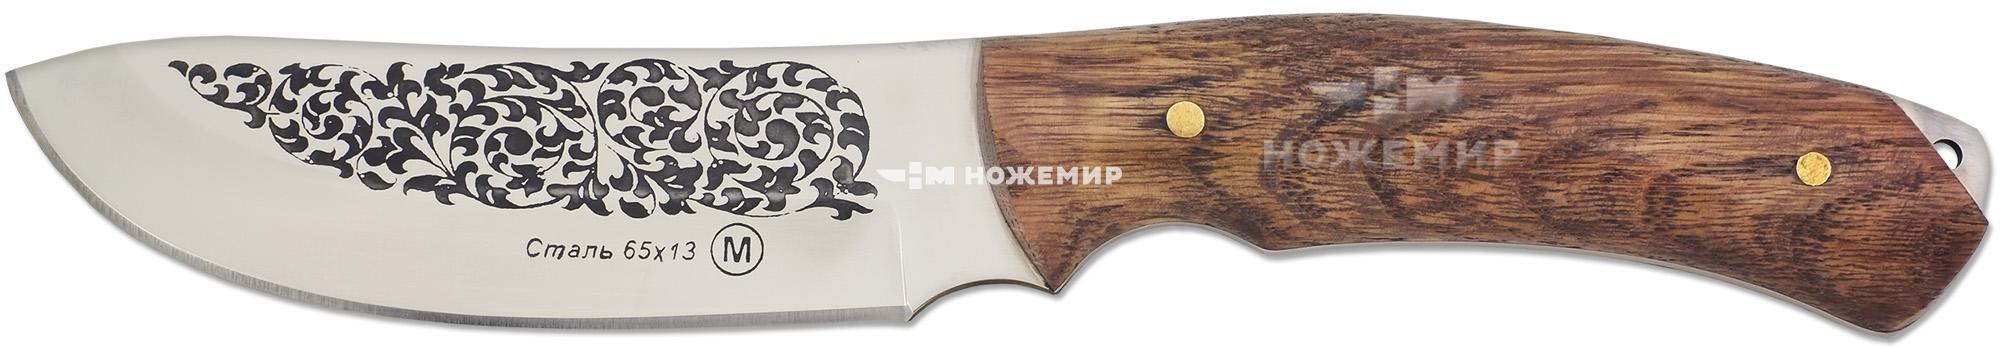 Нож шкуросъёмный Кизляр Ш2-ЦМ (9101)